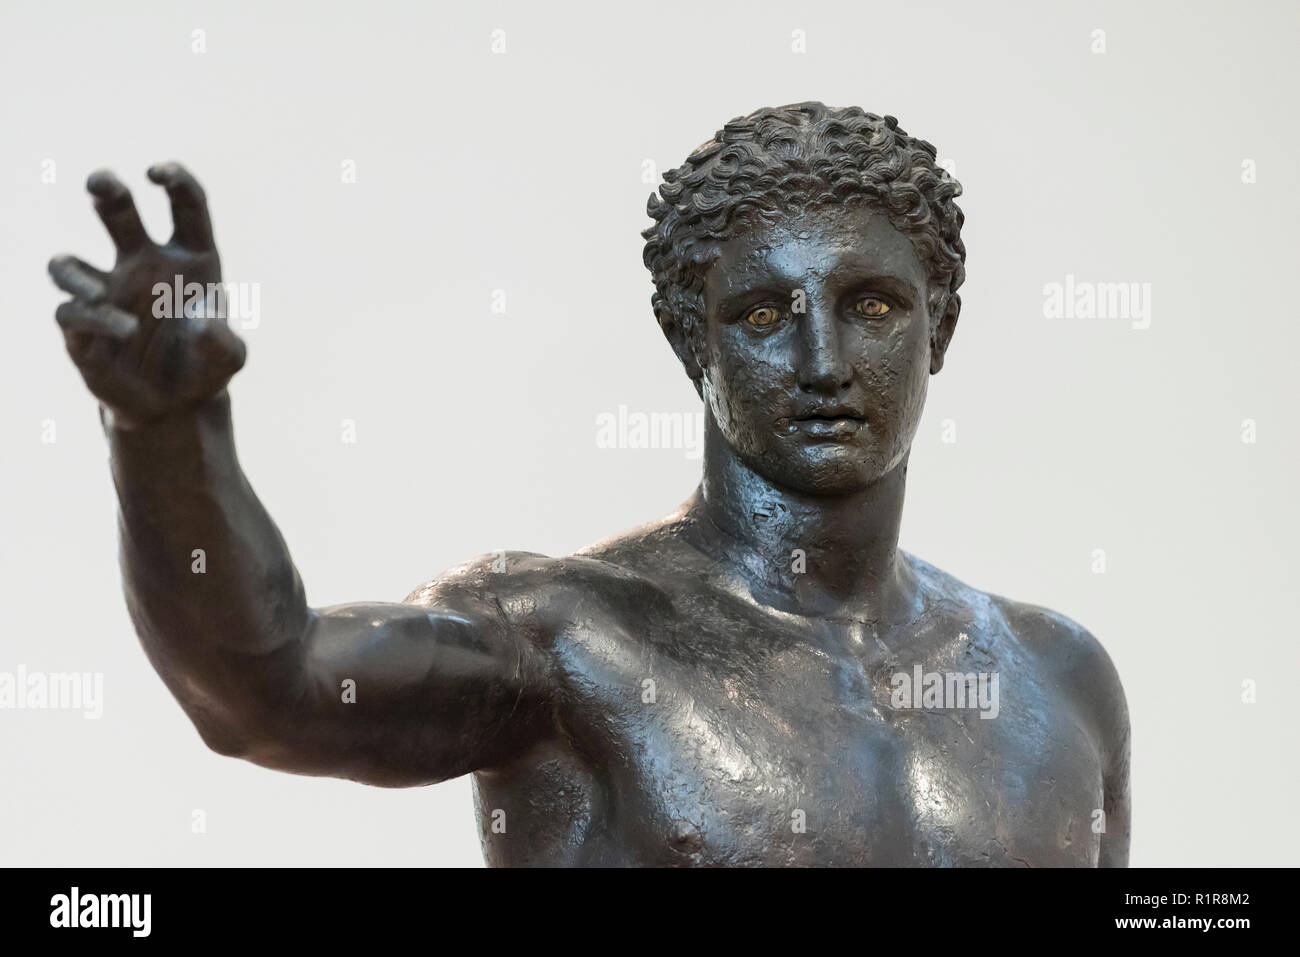 Atenas. Grecia. La Antikythera (Juventud), Ephebe griego antiguo estatua de bronce de la Antikythera naufragio, fechada ca. 340-330 A.C. Archaeologi nacional Foto de stock